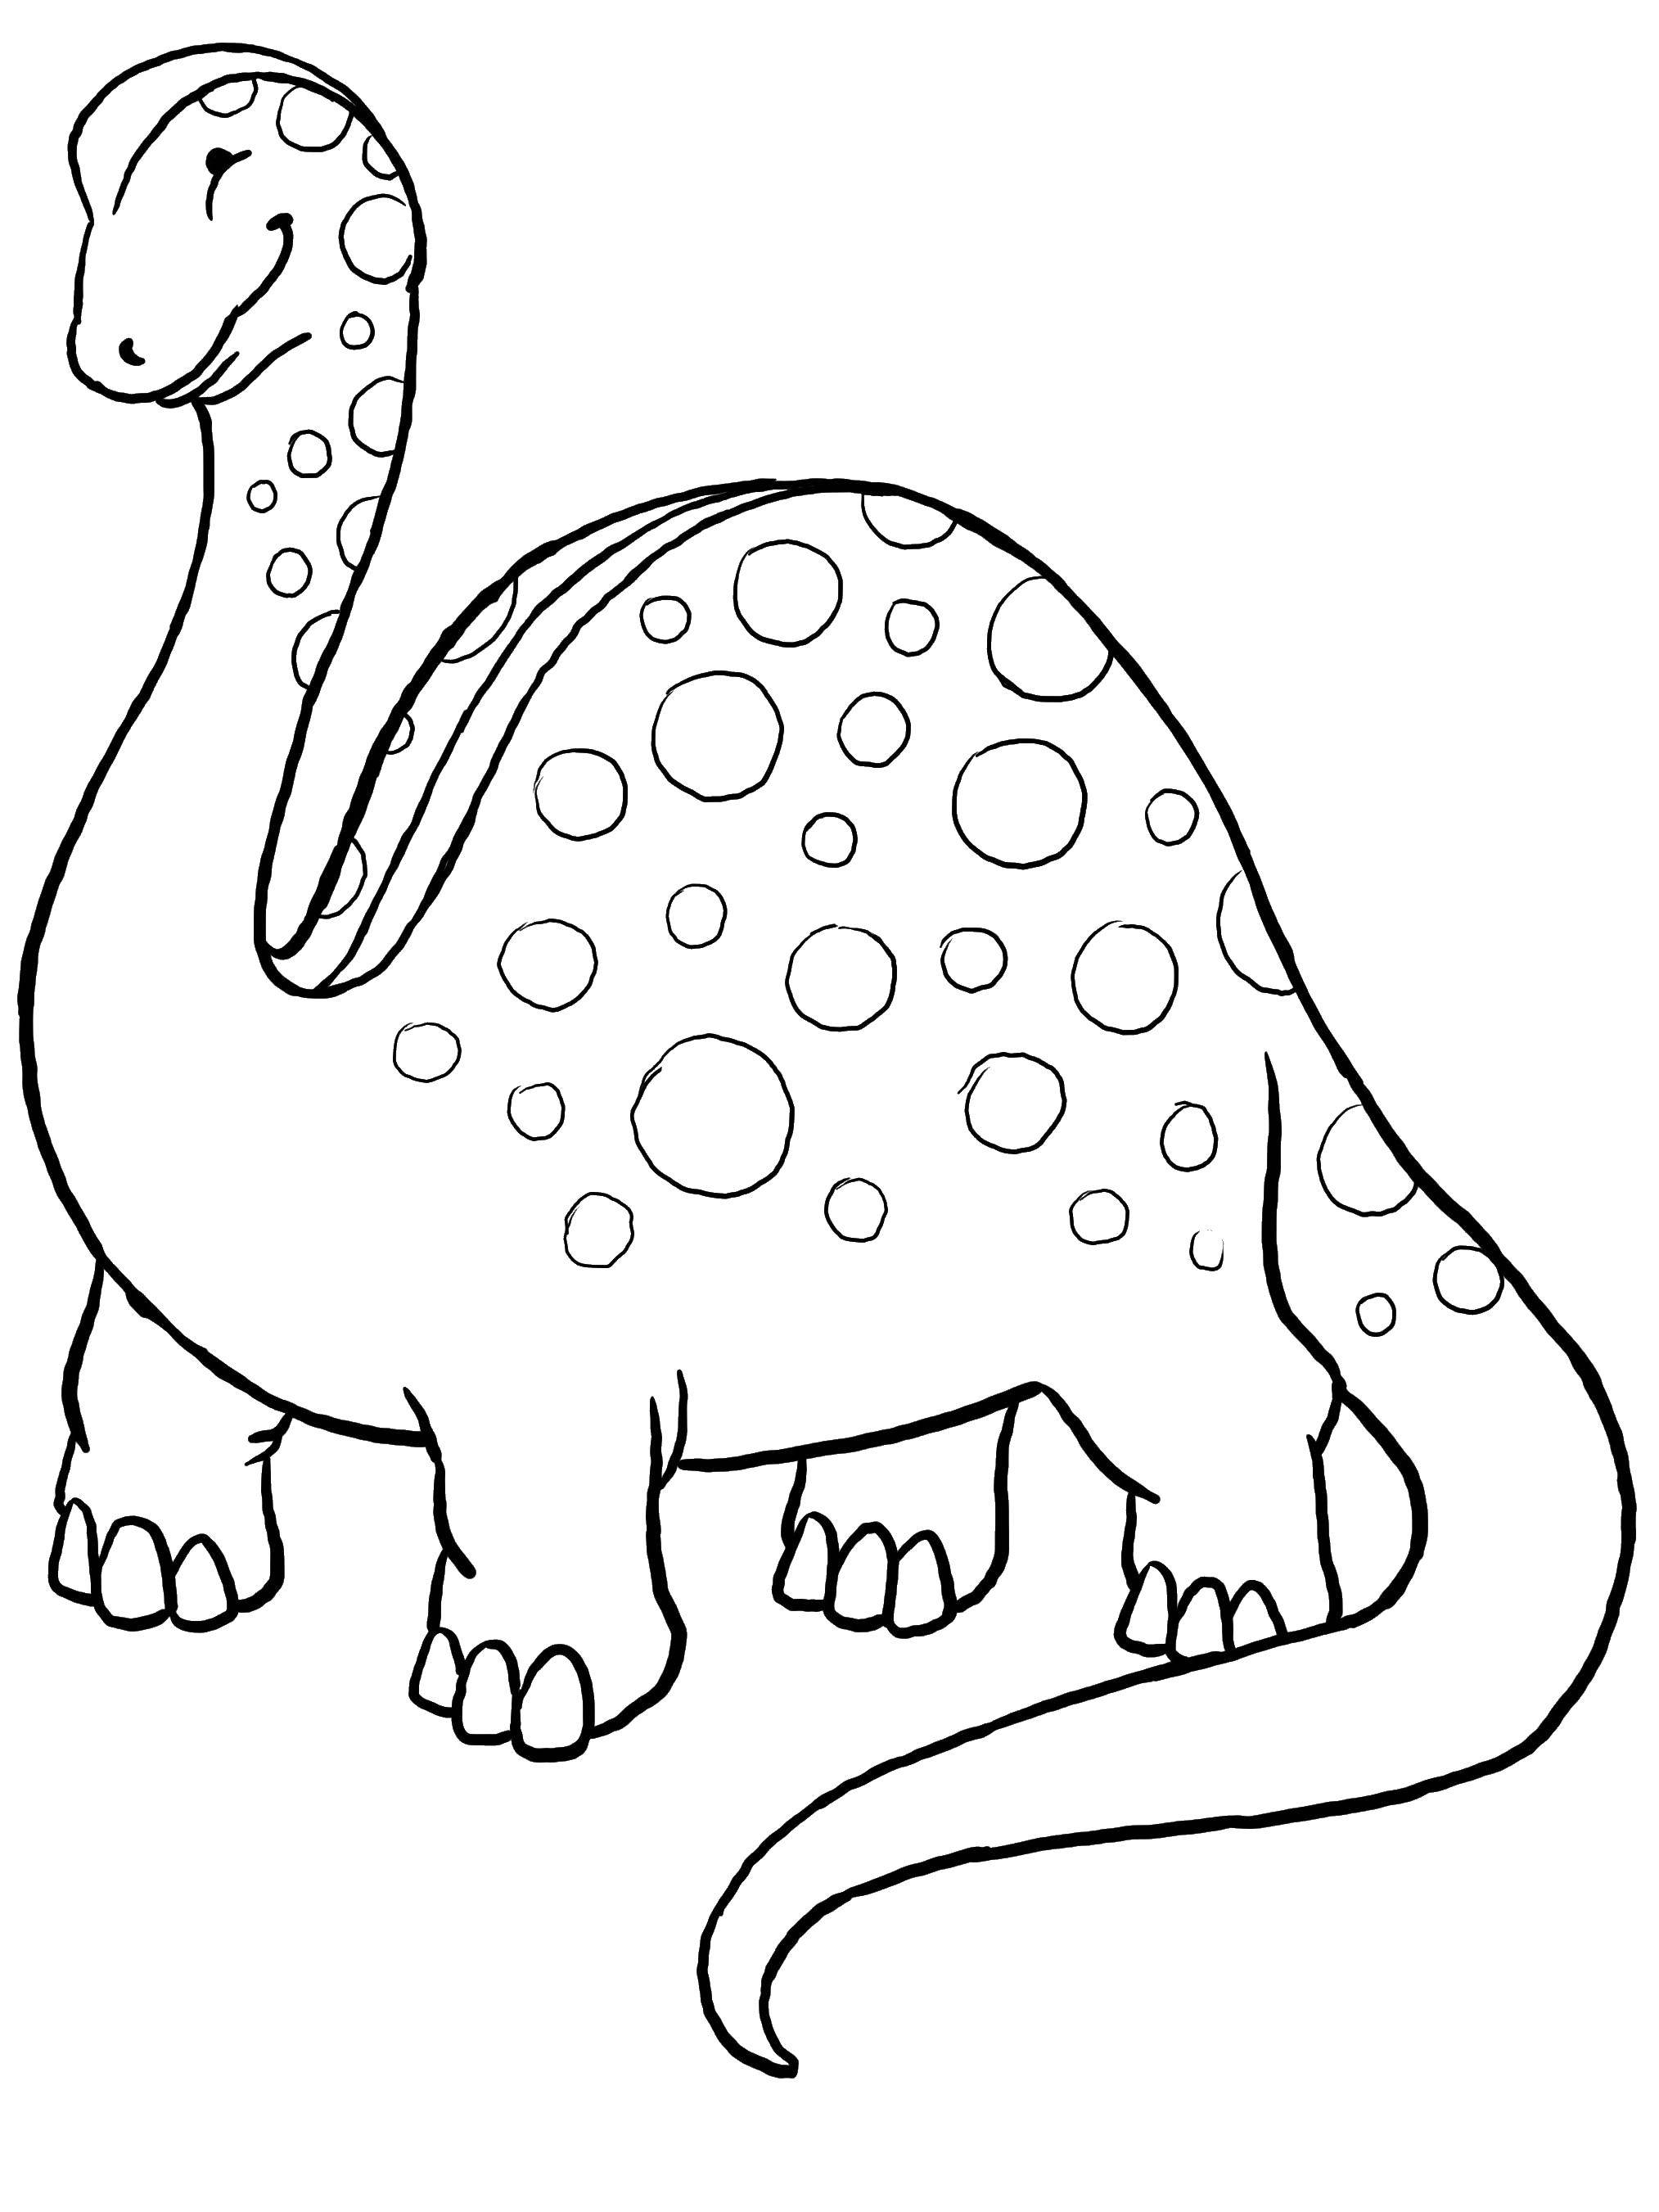 Опис: розмальовки  Бронтозаврик. Категорія: динозавр. Теги:  Динозаври, бронтозавр.